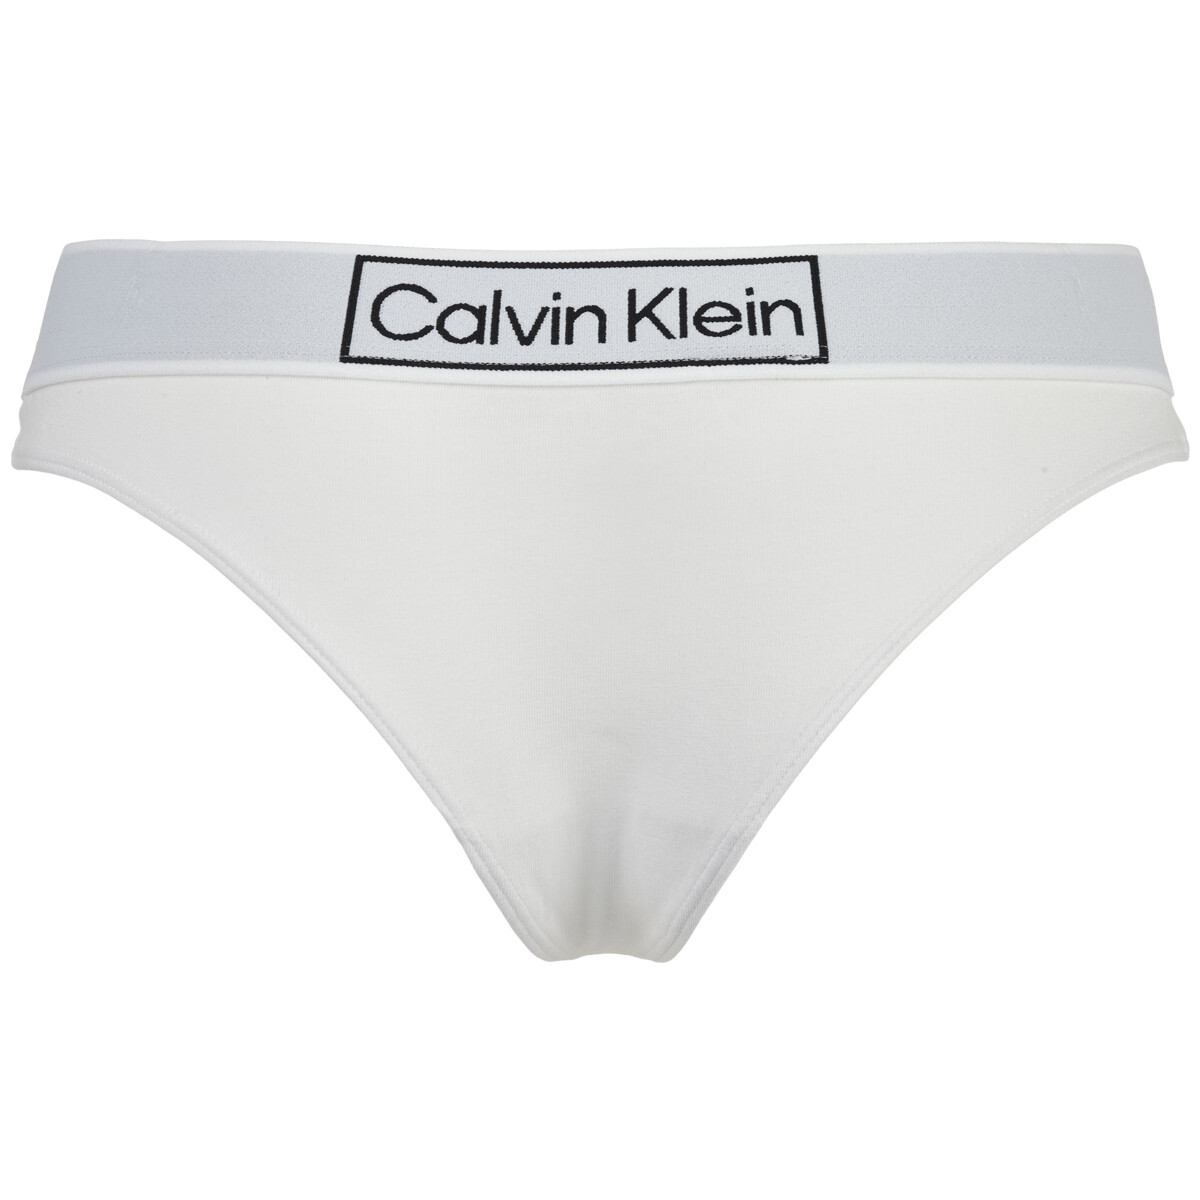 Se Calvin Klein G-streng, Farve: Hvid, Størrelse: XS, Dame hos Netlingeri.dk